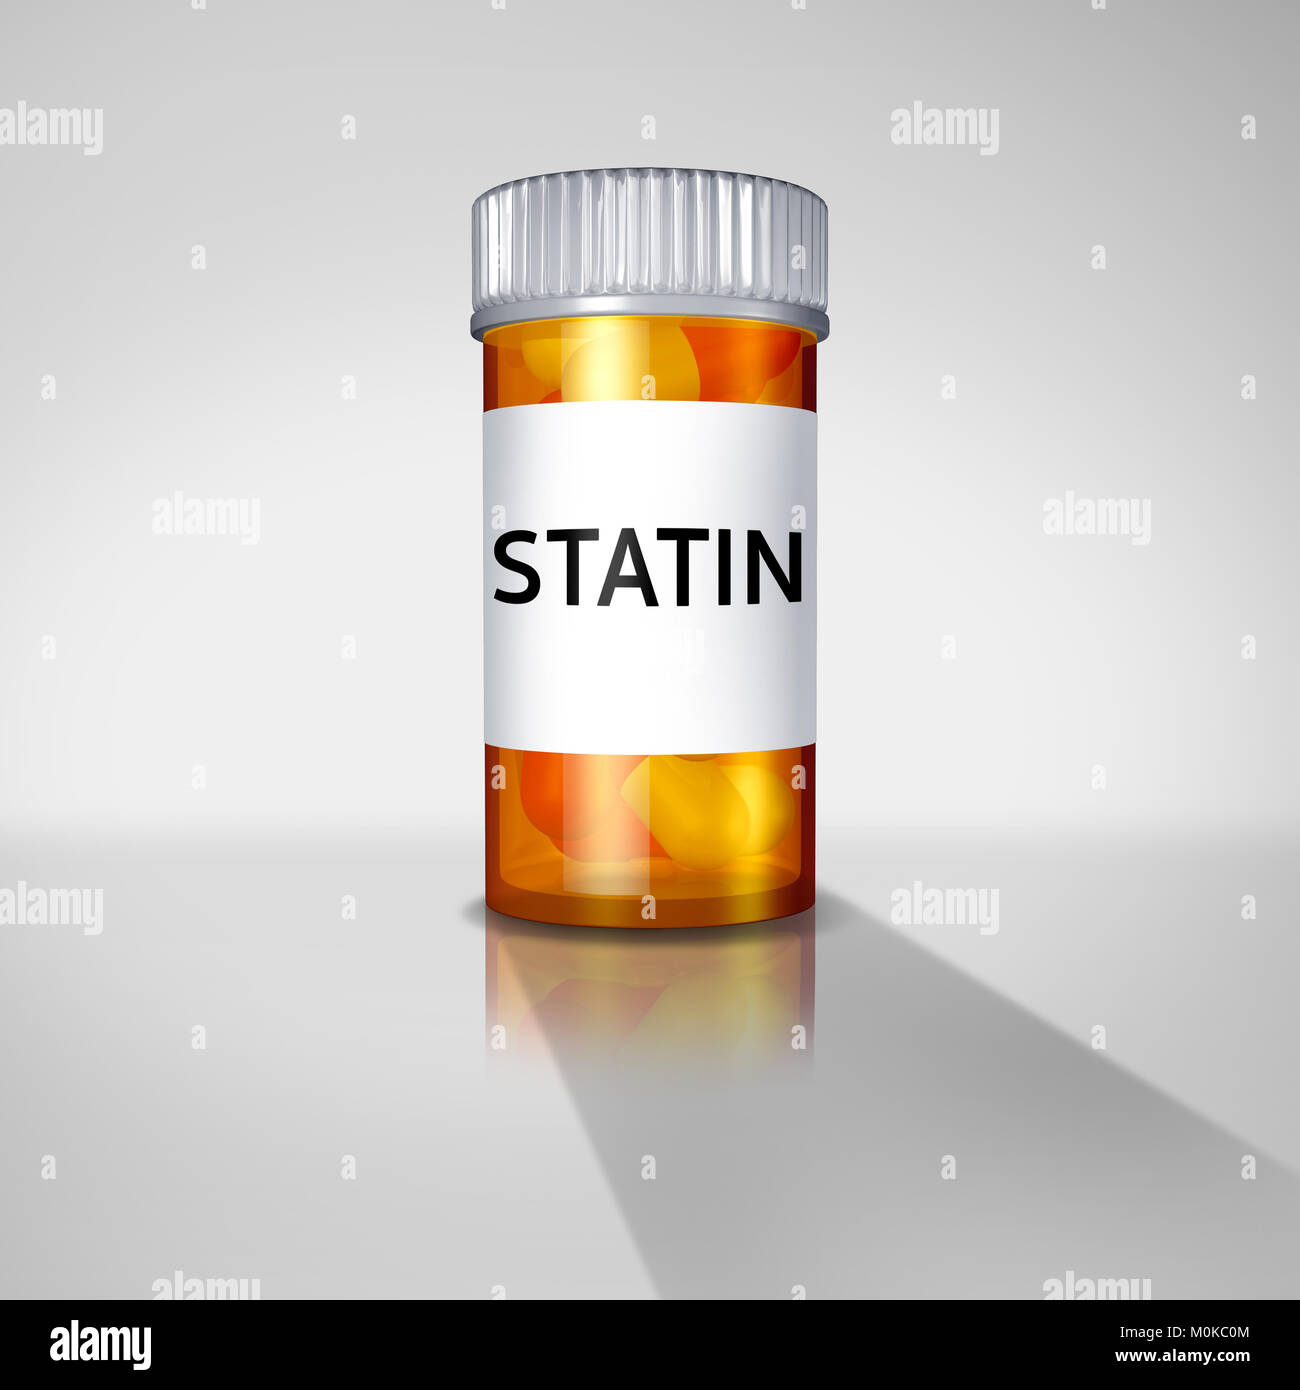 Statine und statine Medikamente Konzept oder verschreibungspflichtige pharmazeutische Medikamente Medikamente vom Arzt verordnet. Stockfoto